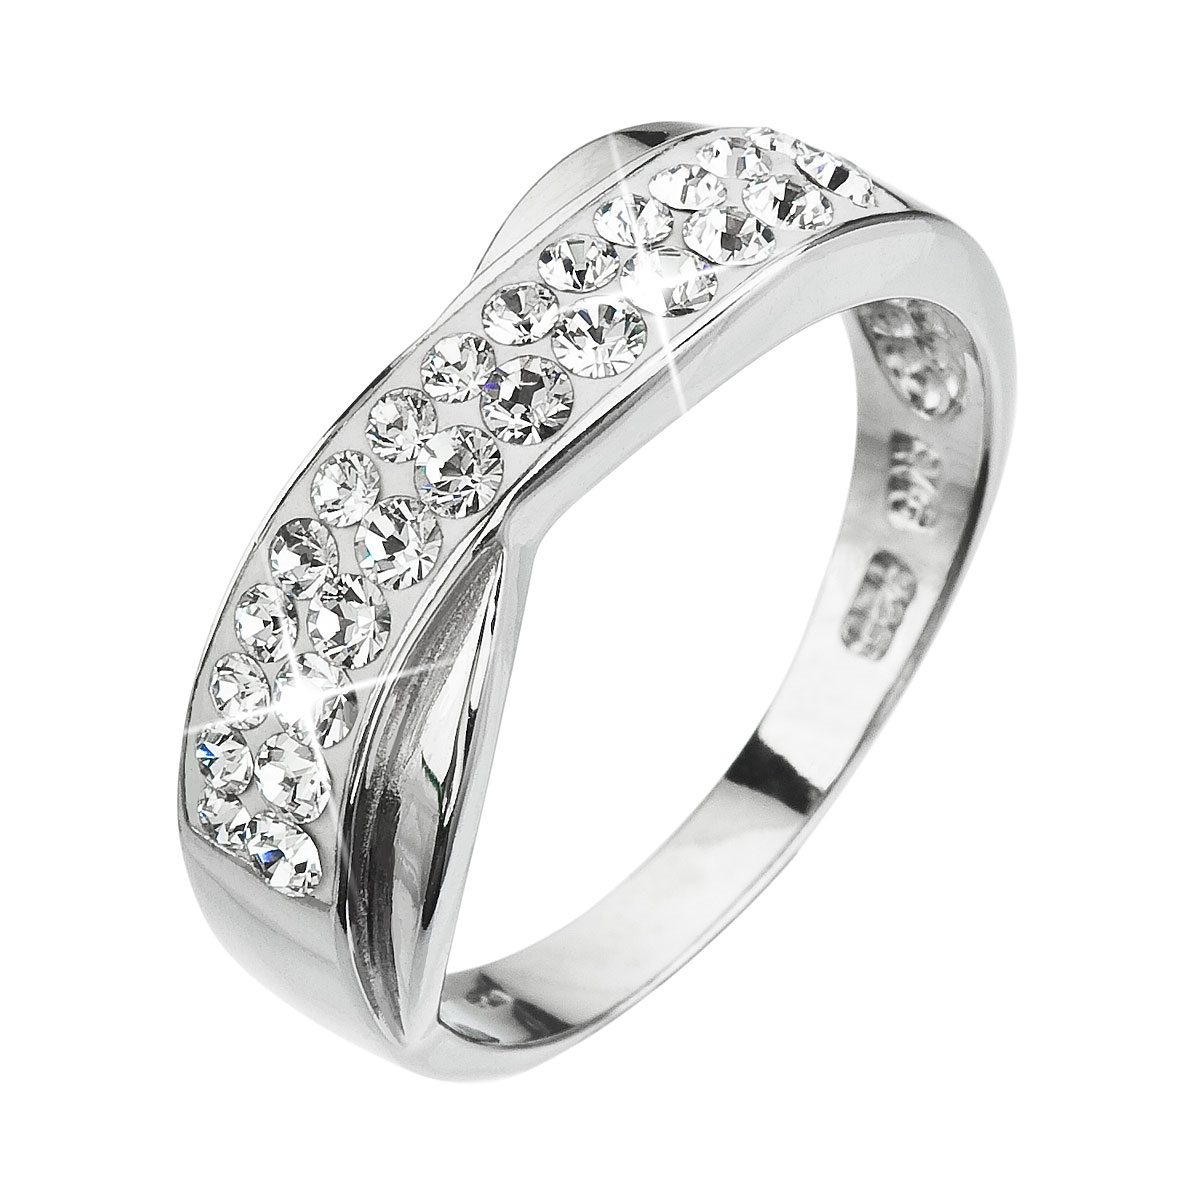 Strieborný prsteň s kryštálmi Crystals from Swarovski ® Crystal